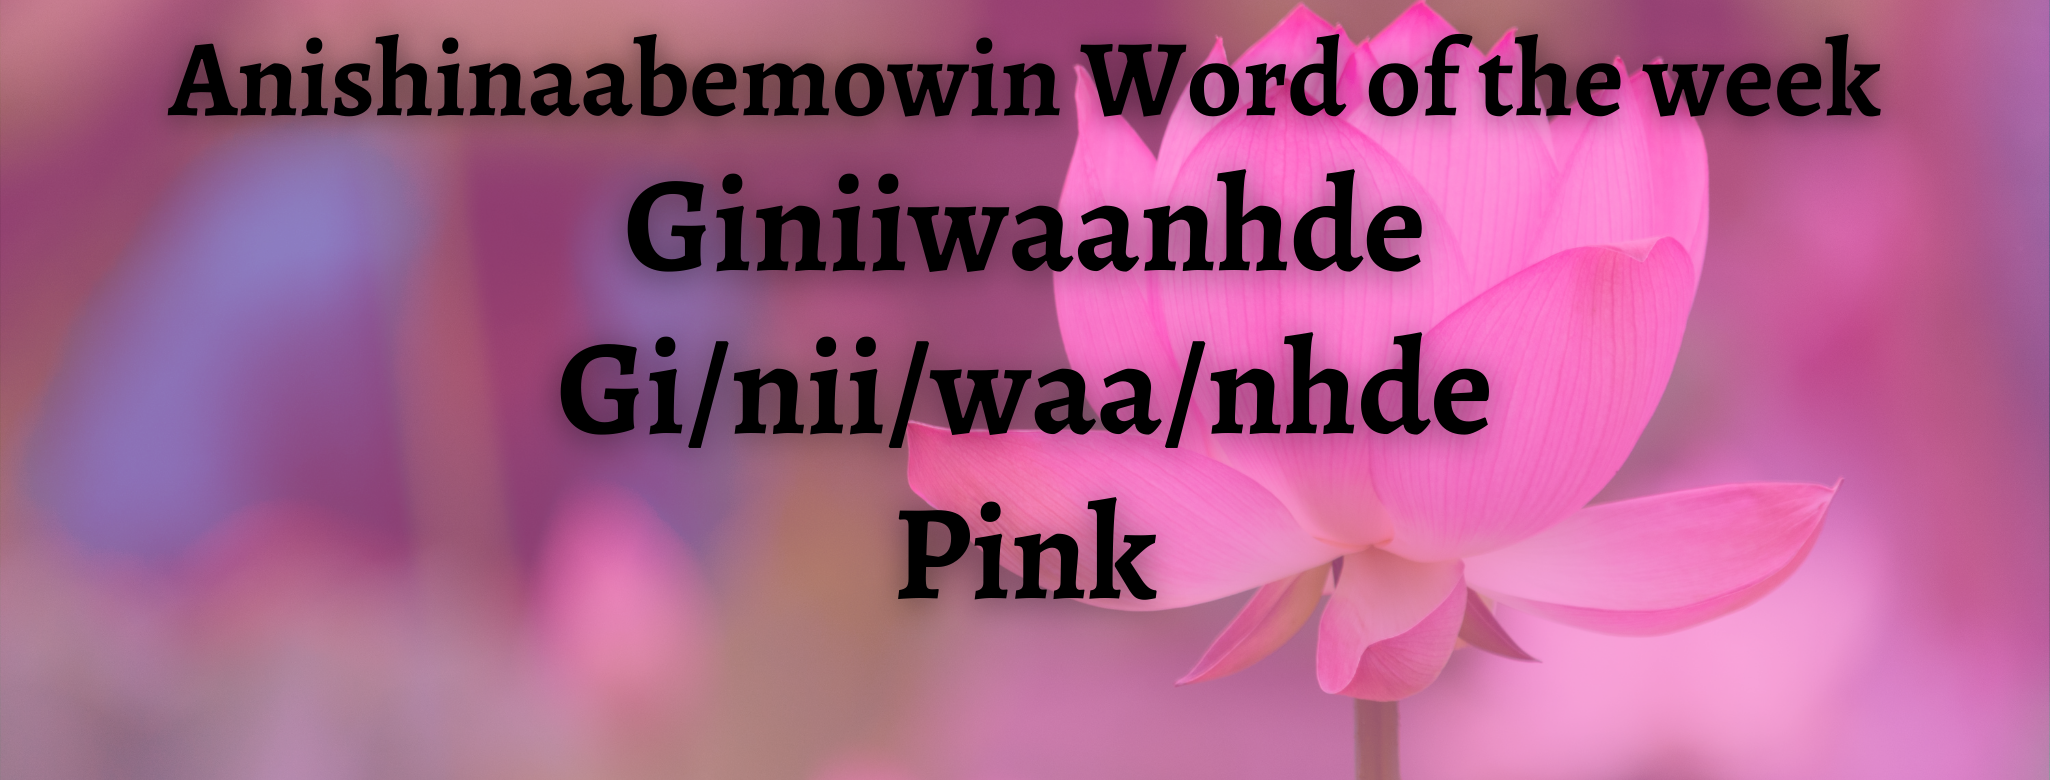 Anishinaabemowin Word of the week Giniiwaanhde Pink